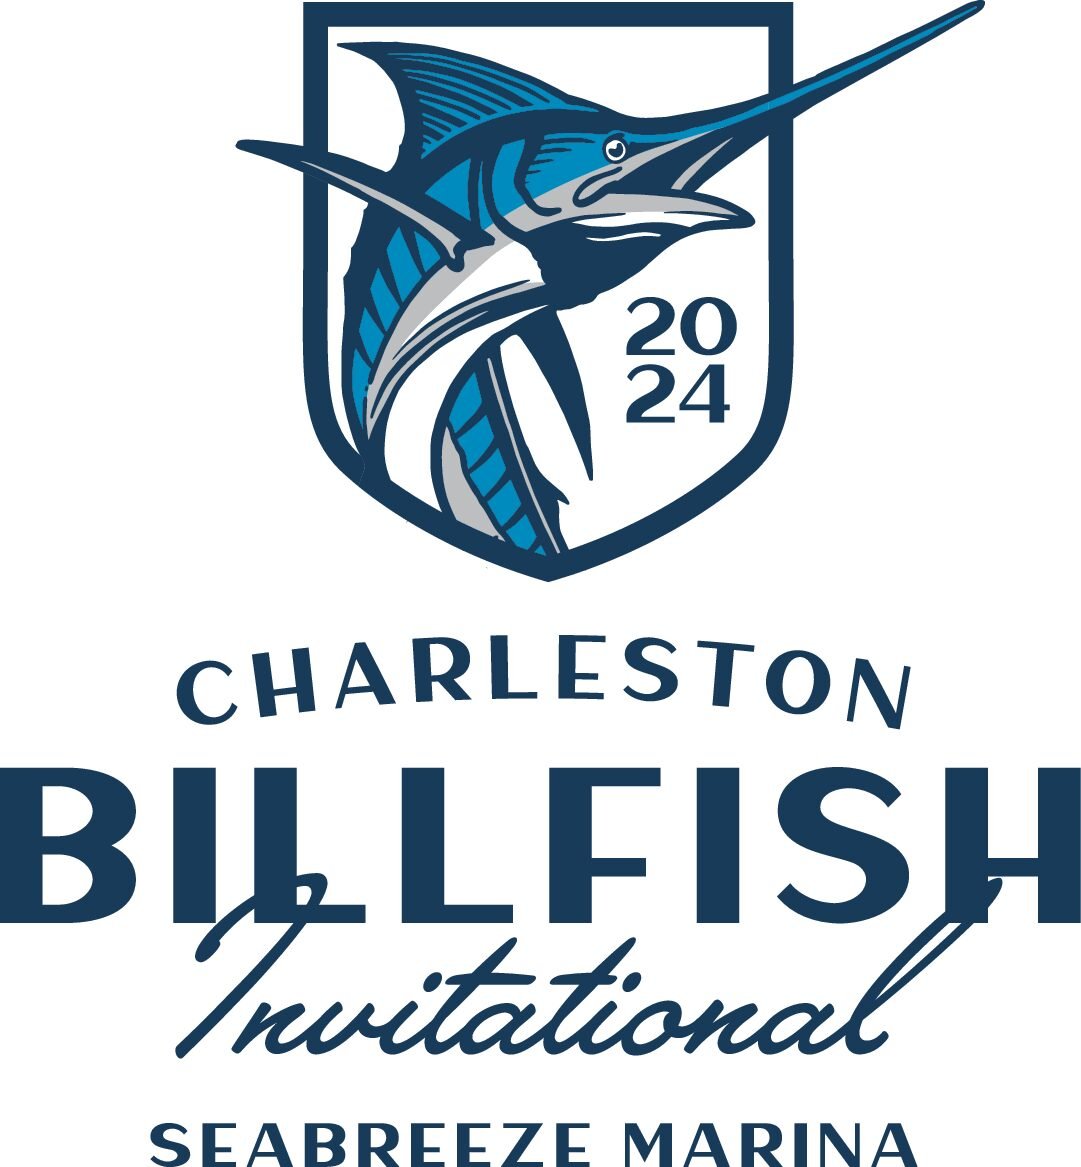 The Charleston Billfish Invitational